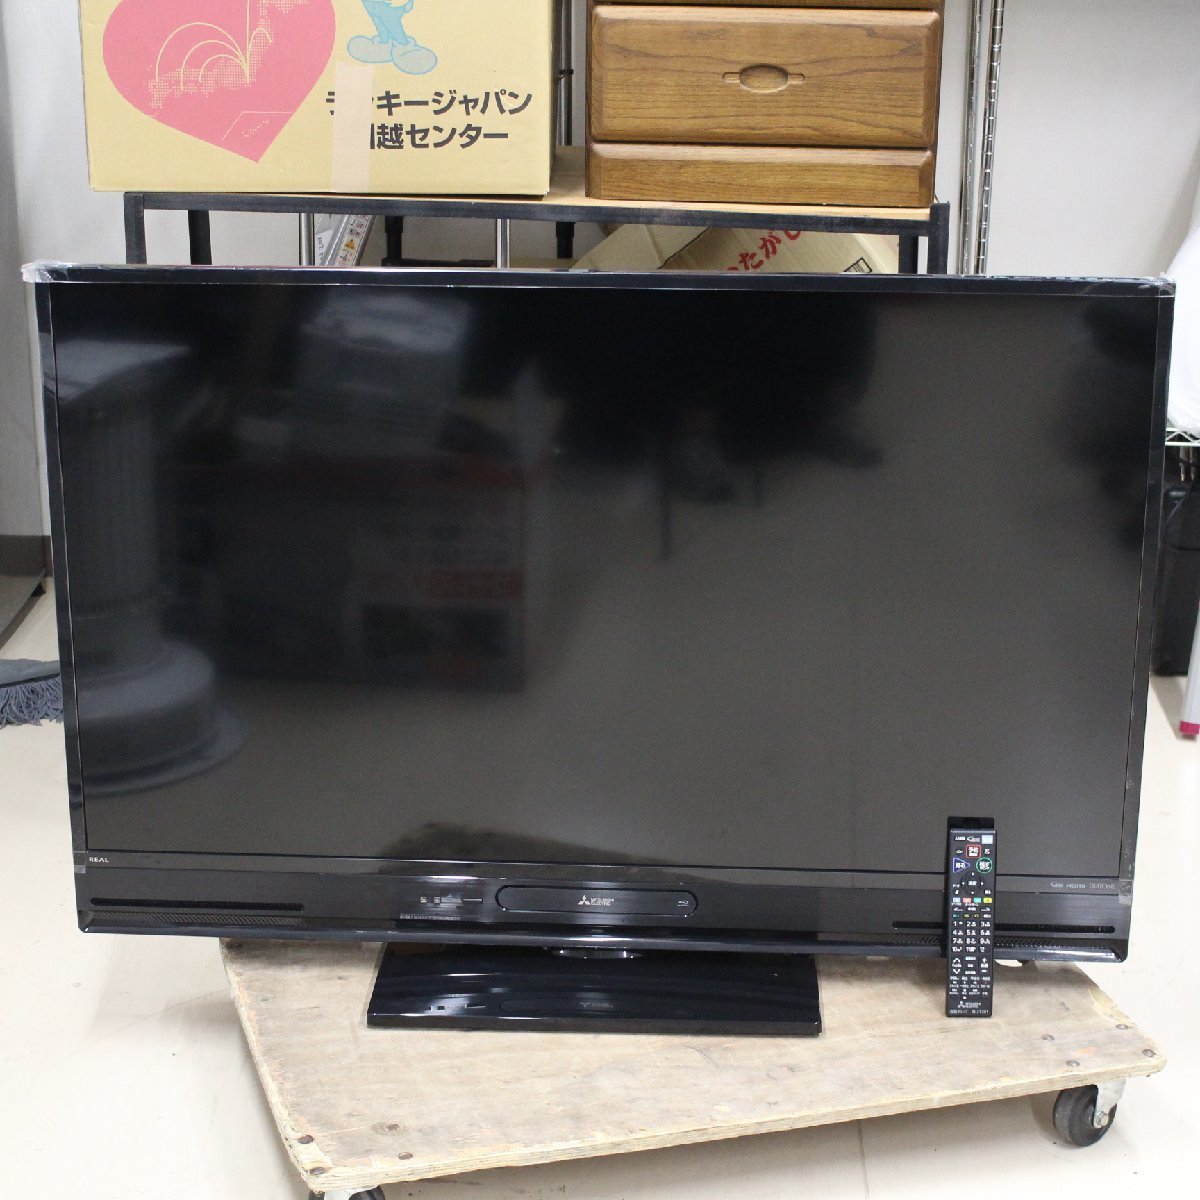 川崎市中原区にて 三菱 液晶テレビ LCD-A50BHR8 2017年製 を出張買取させて頂きました。